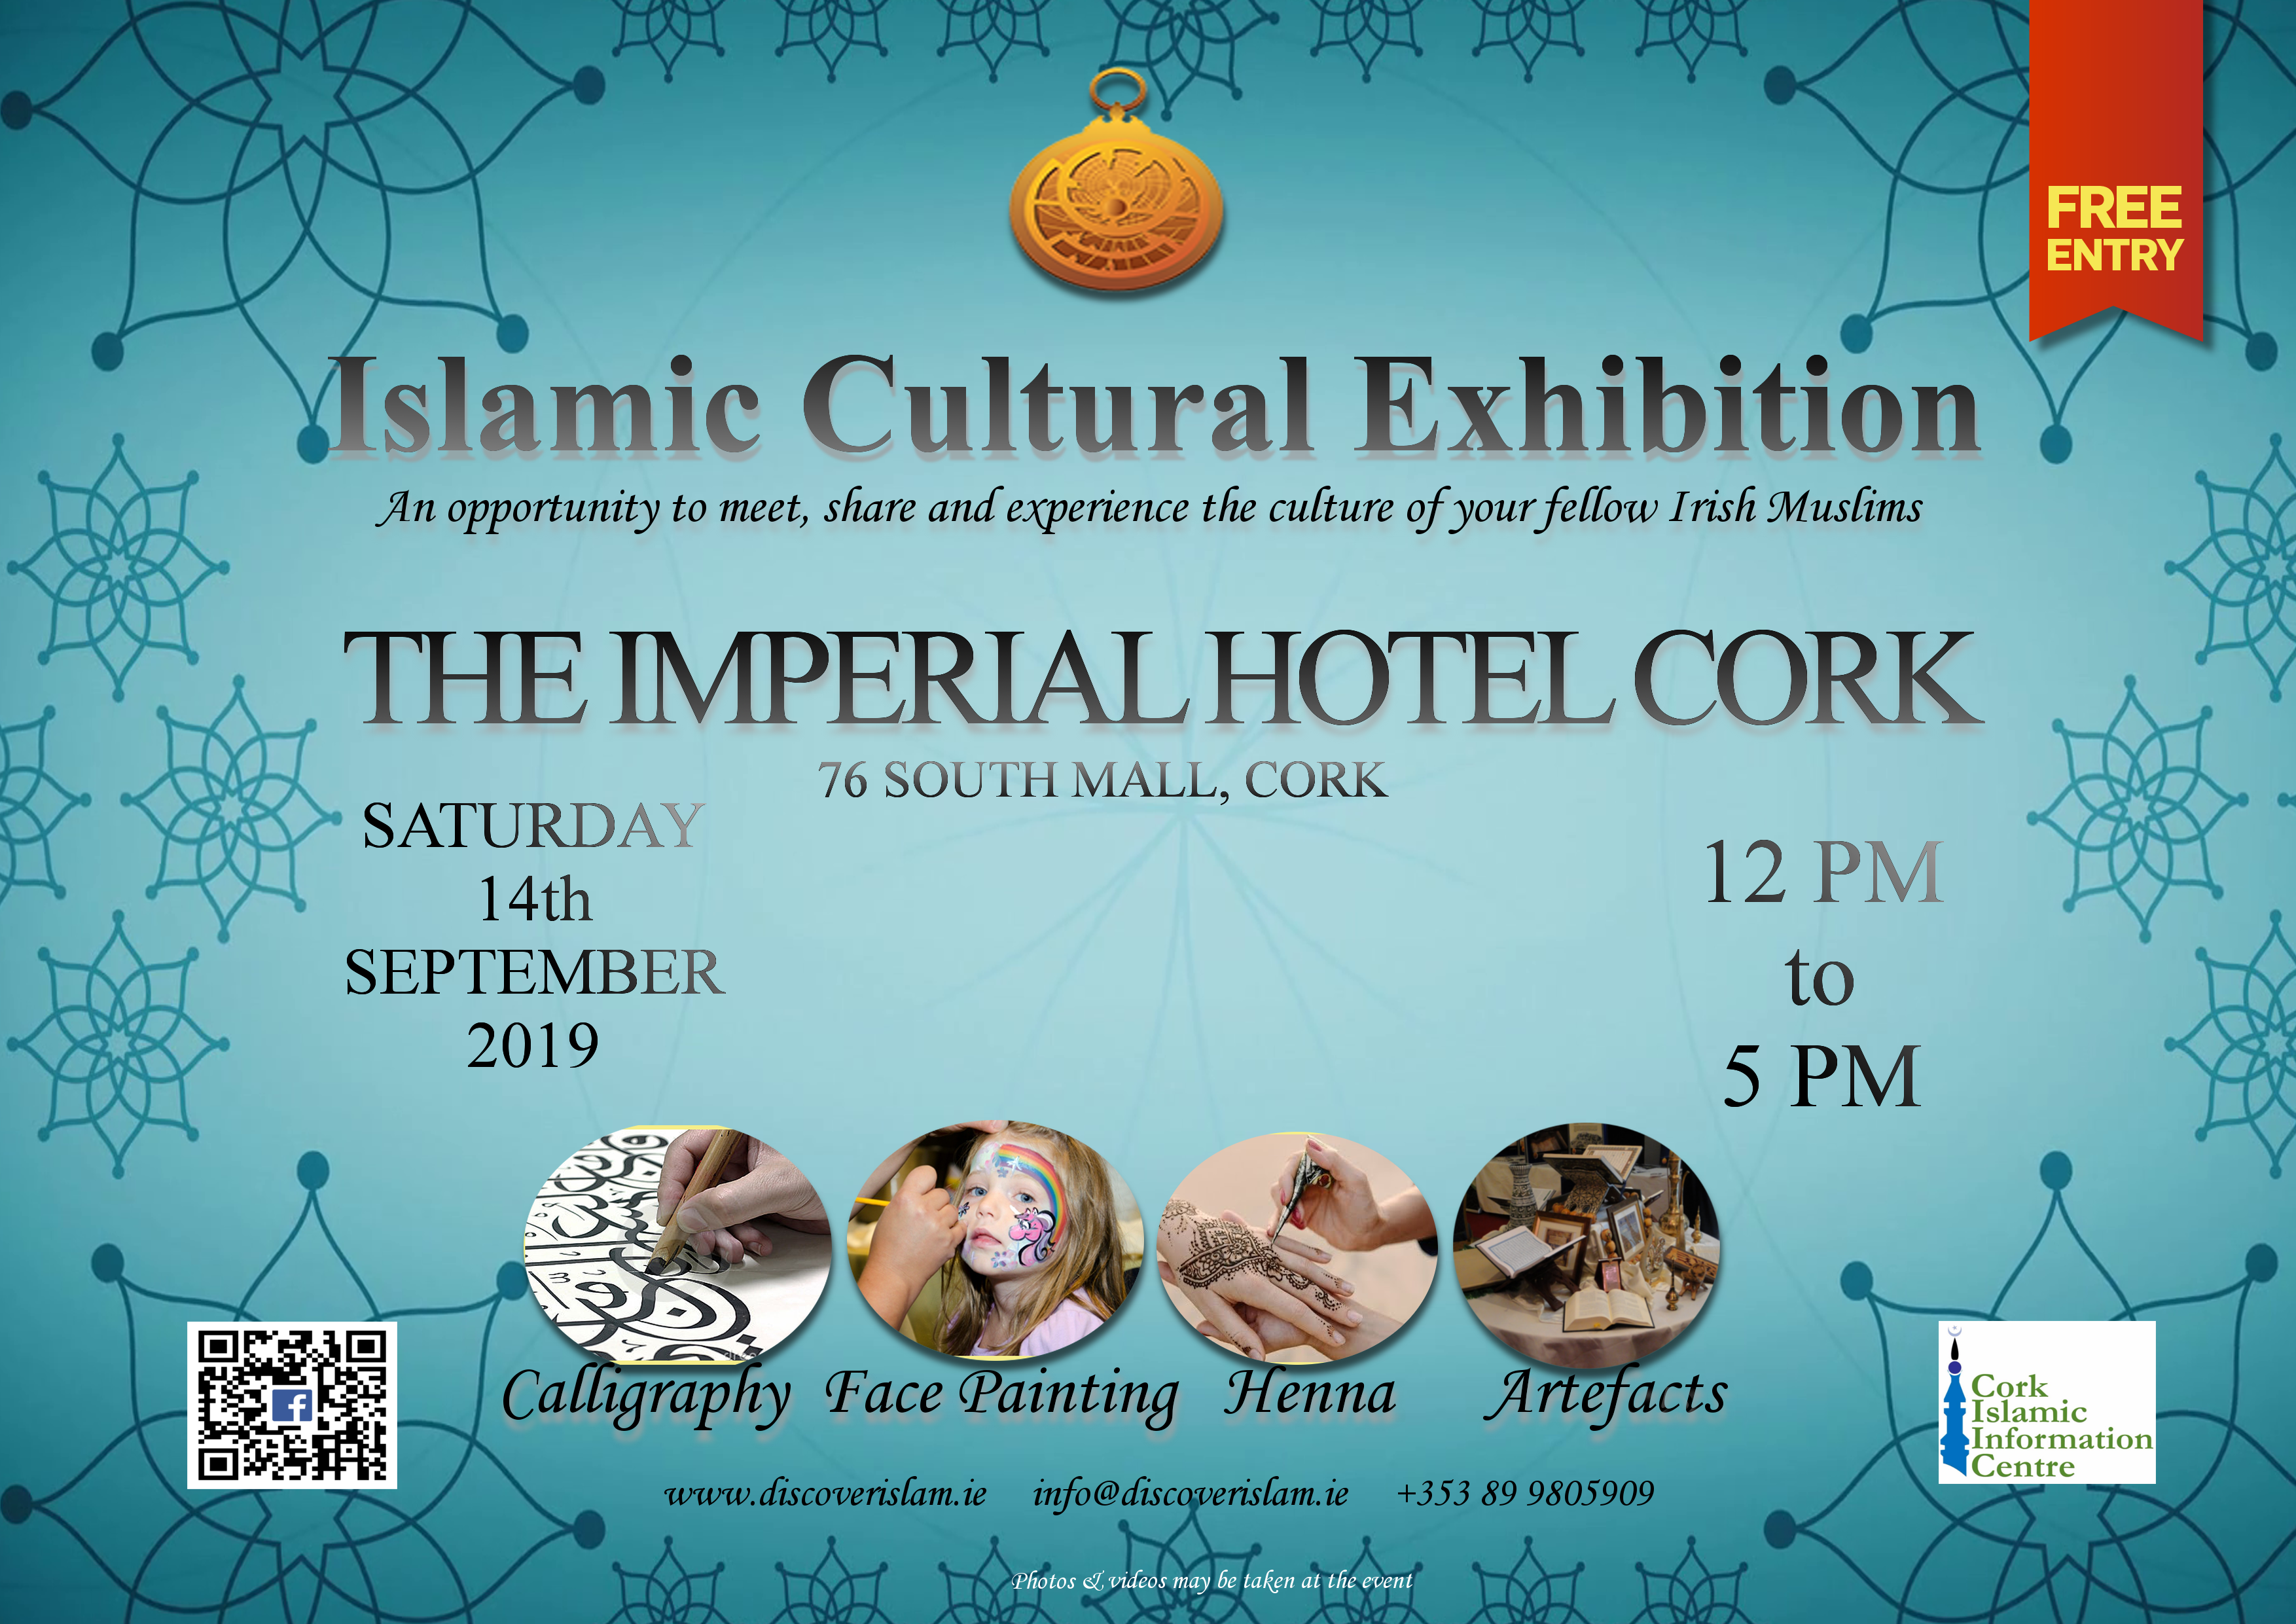 Cork Islamic Culture Exhibition 2019